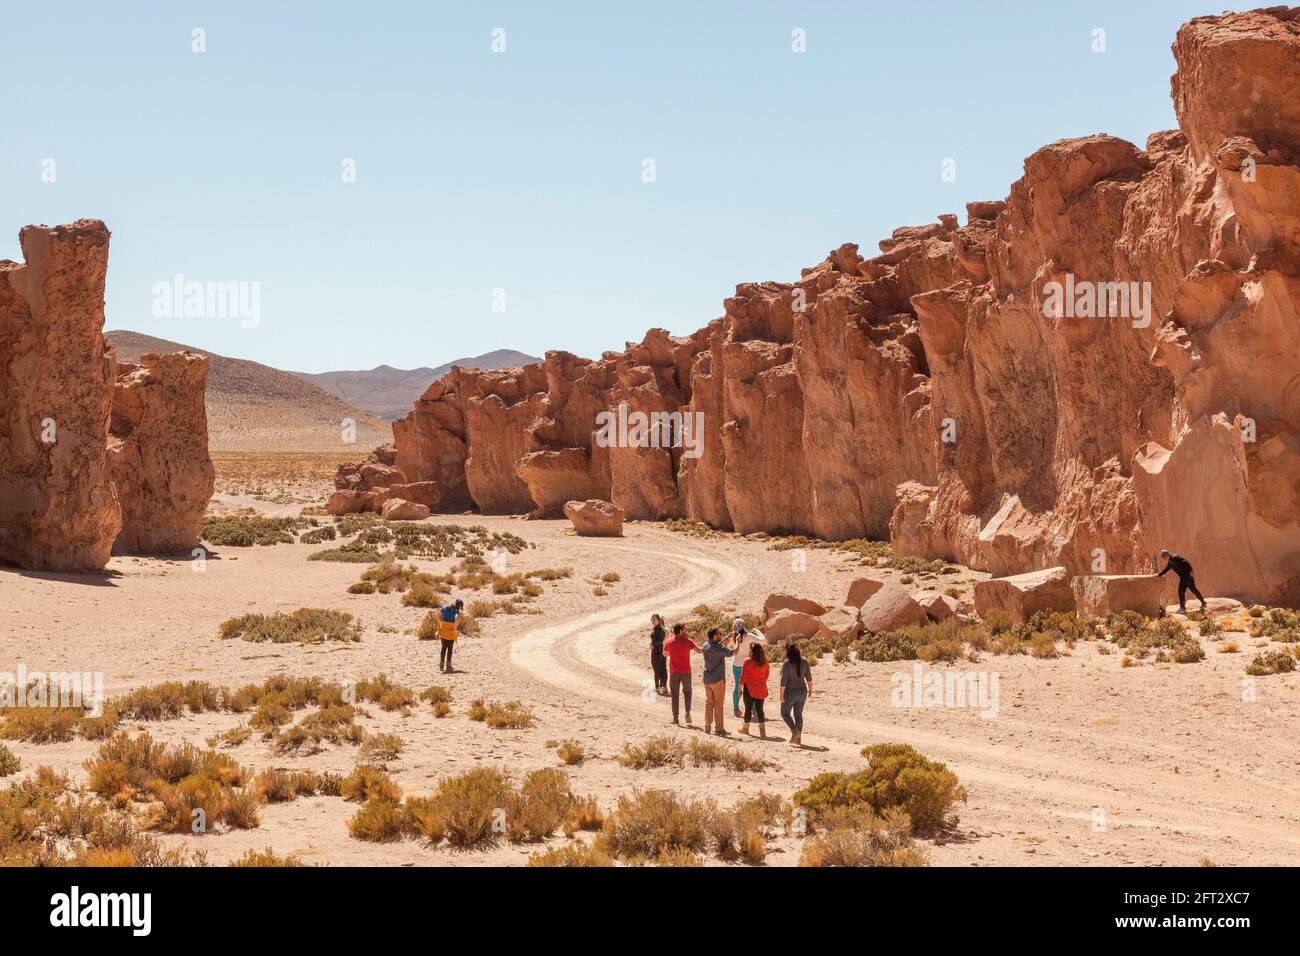 A group of tourists walk through a rocky canyon in Bolivia's Atacama desert. Stock Photo